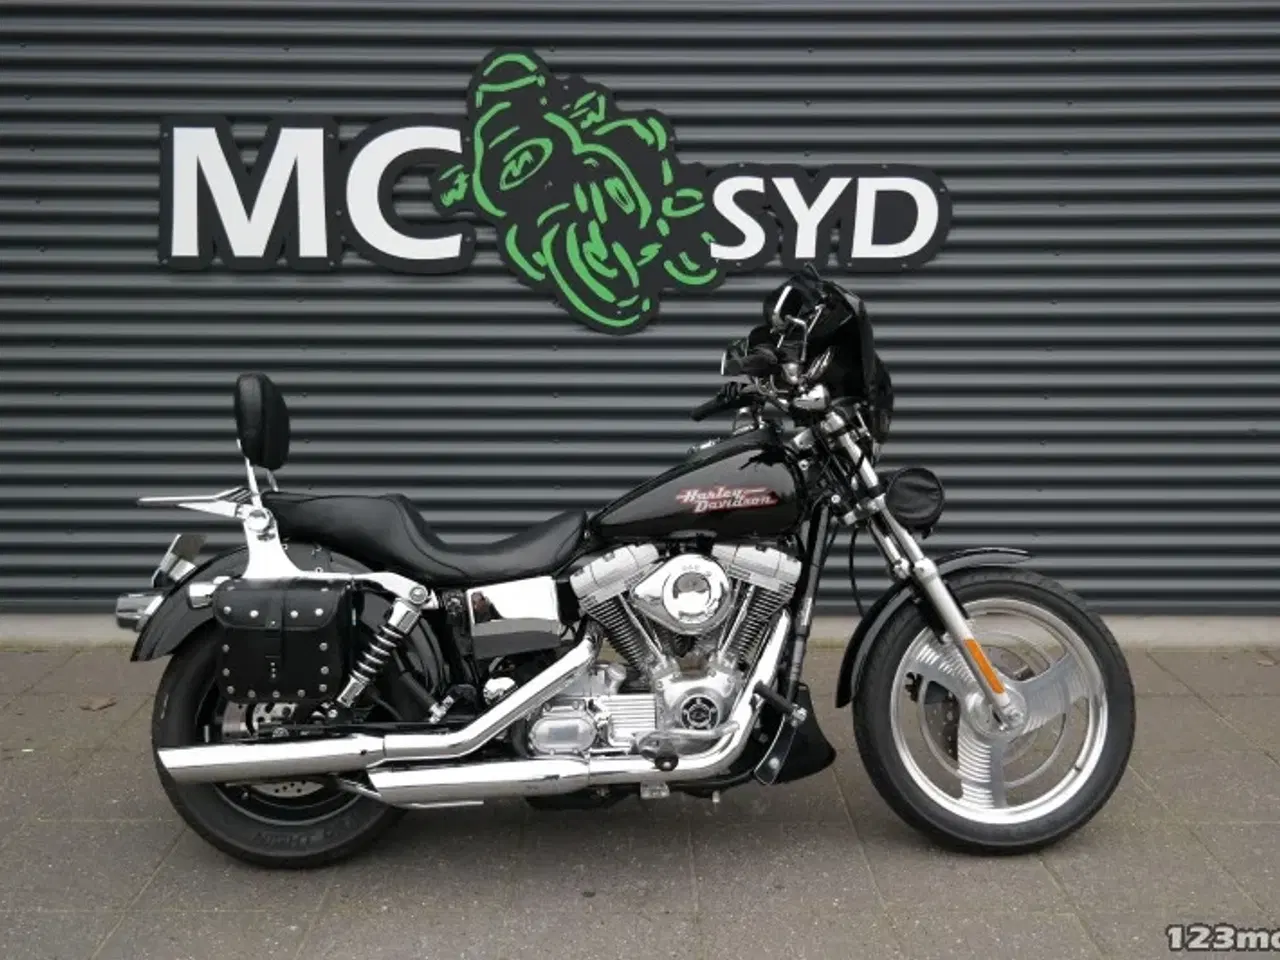 Billede 1 - Harley-Davidson FXD Dyna Super Glide MC-SYD       BYTTER GERNE